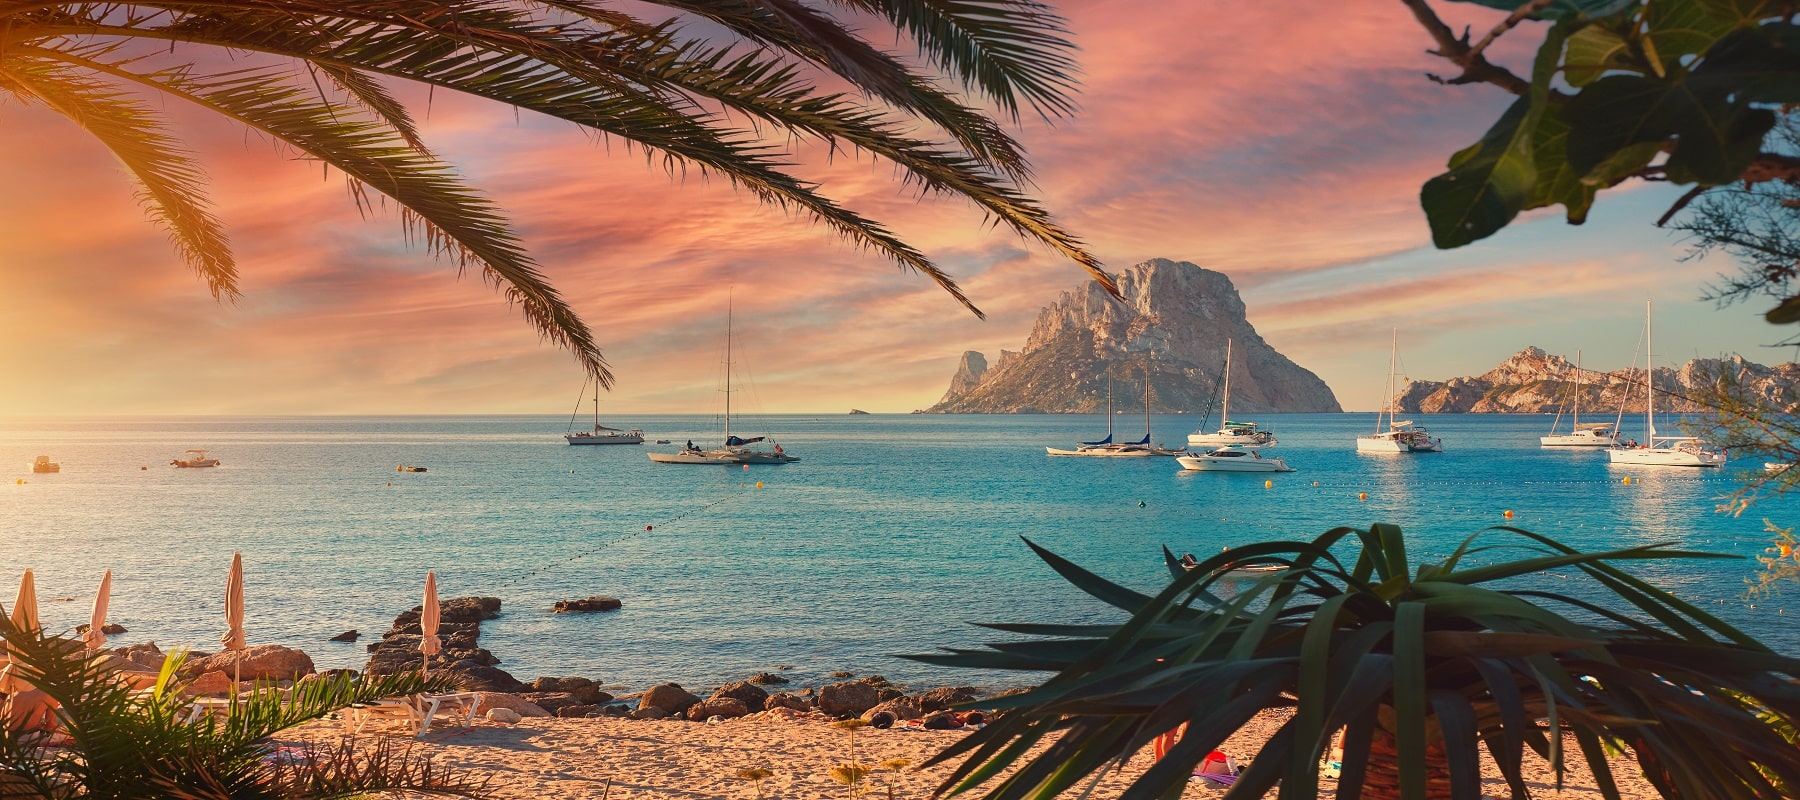 Ibiza Holidays